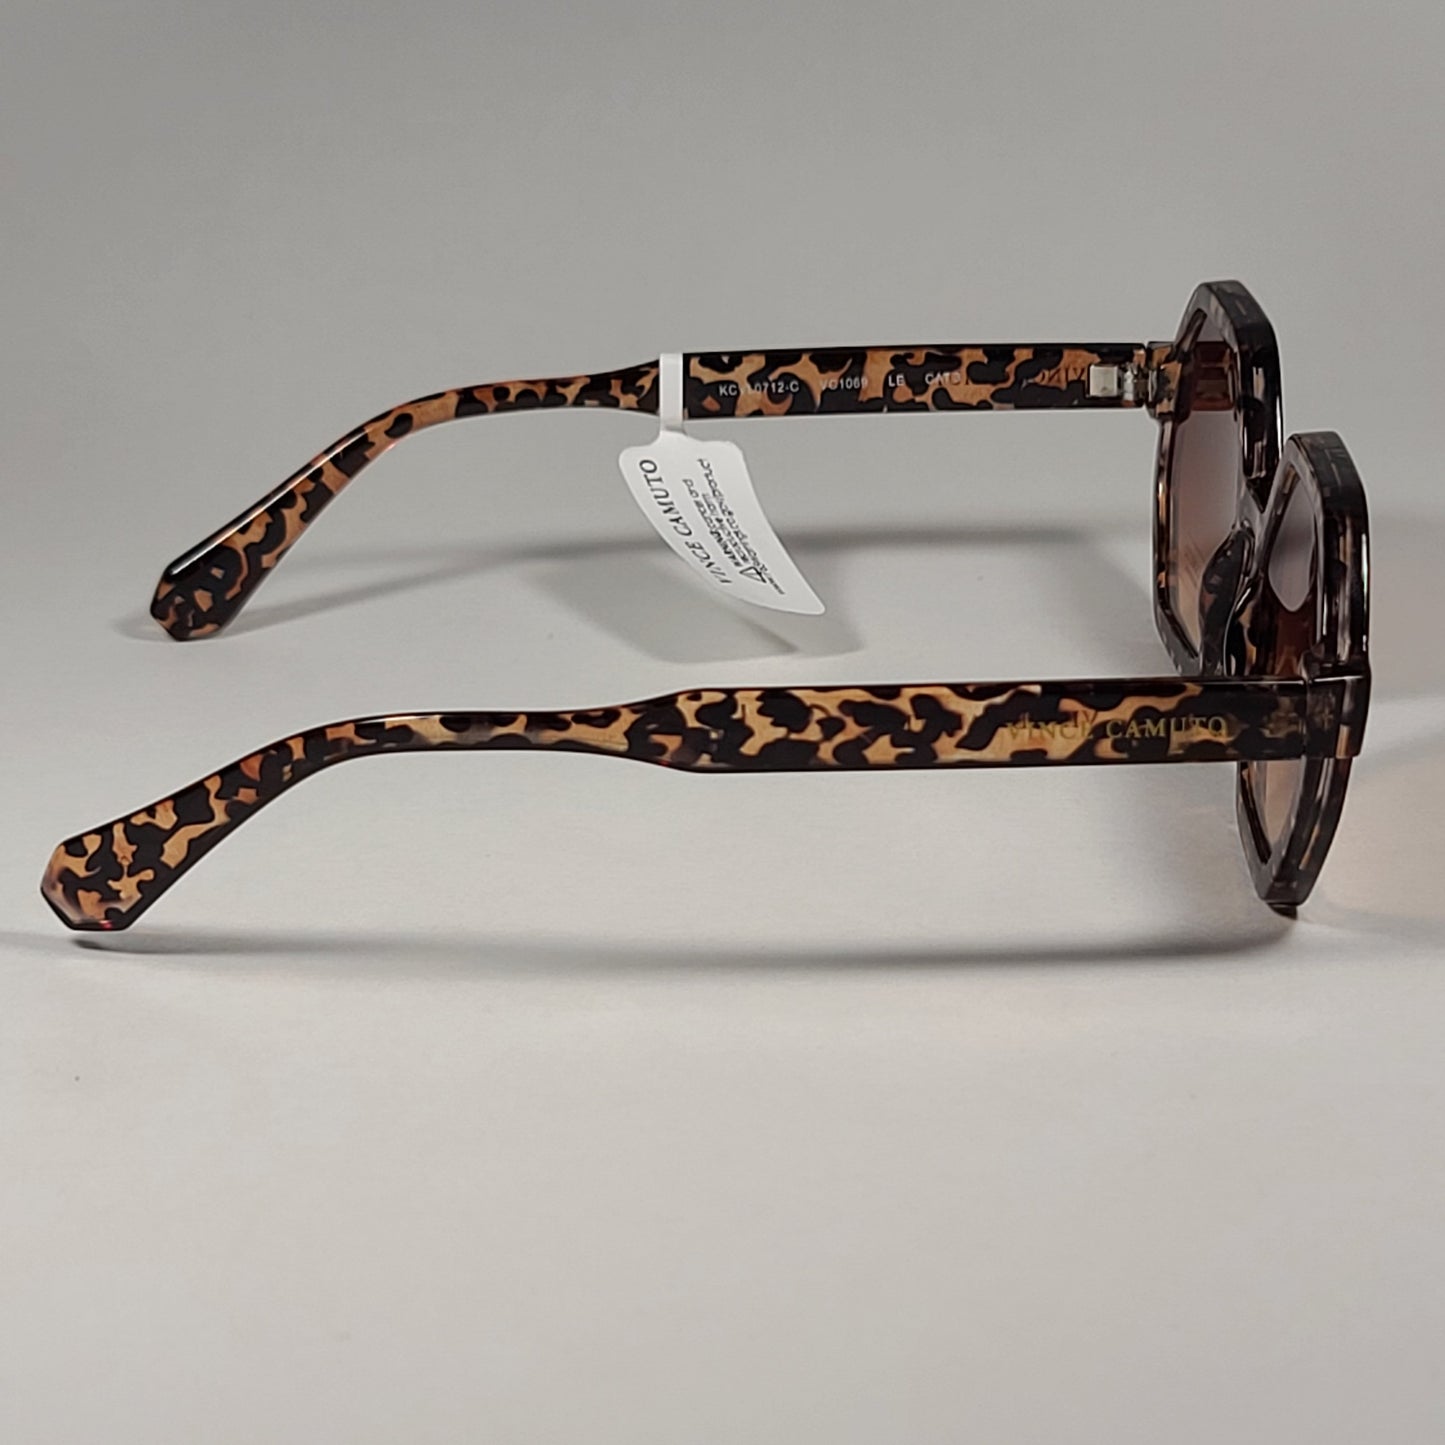 Vince Camuto VC1069 LE Geometric Sunglasses Leopard Frame Brown Gradient Lens - Sunglasses